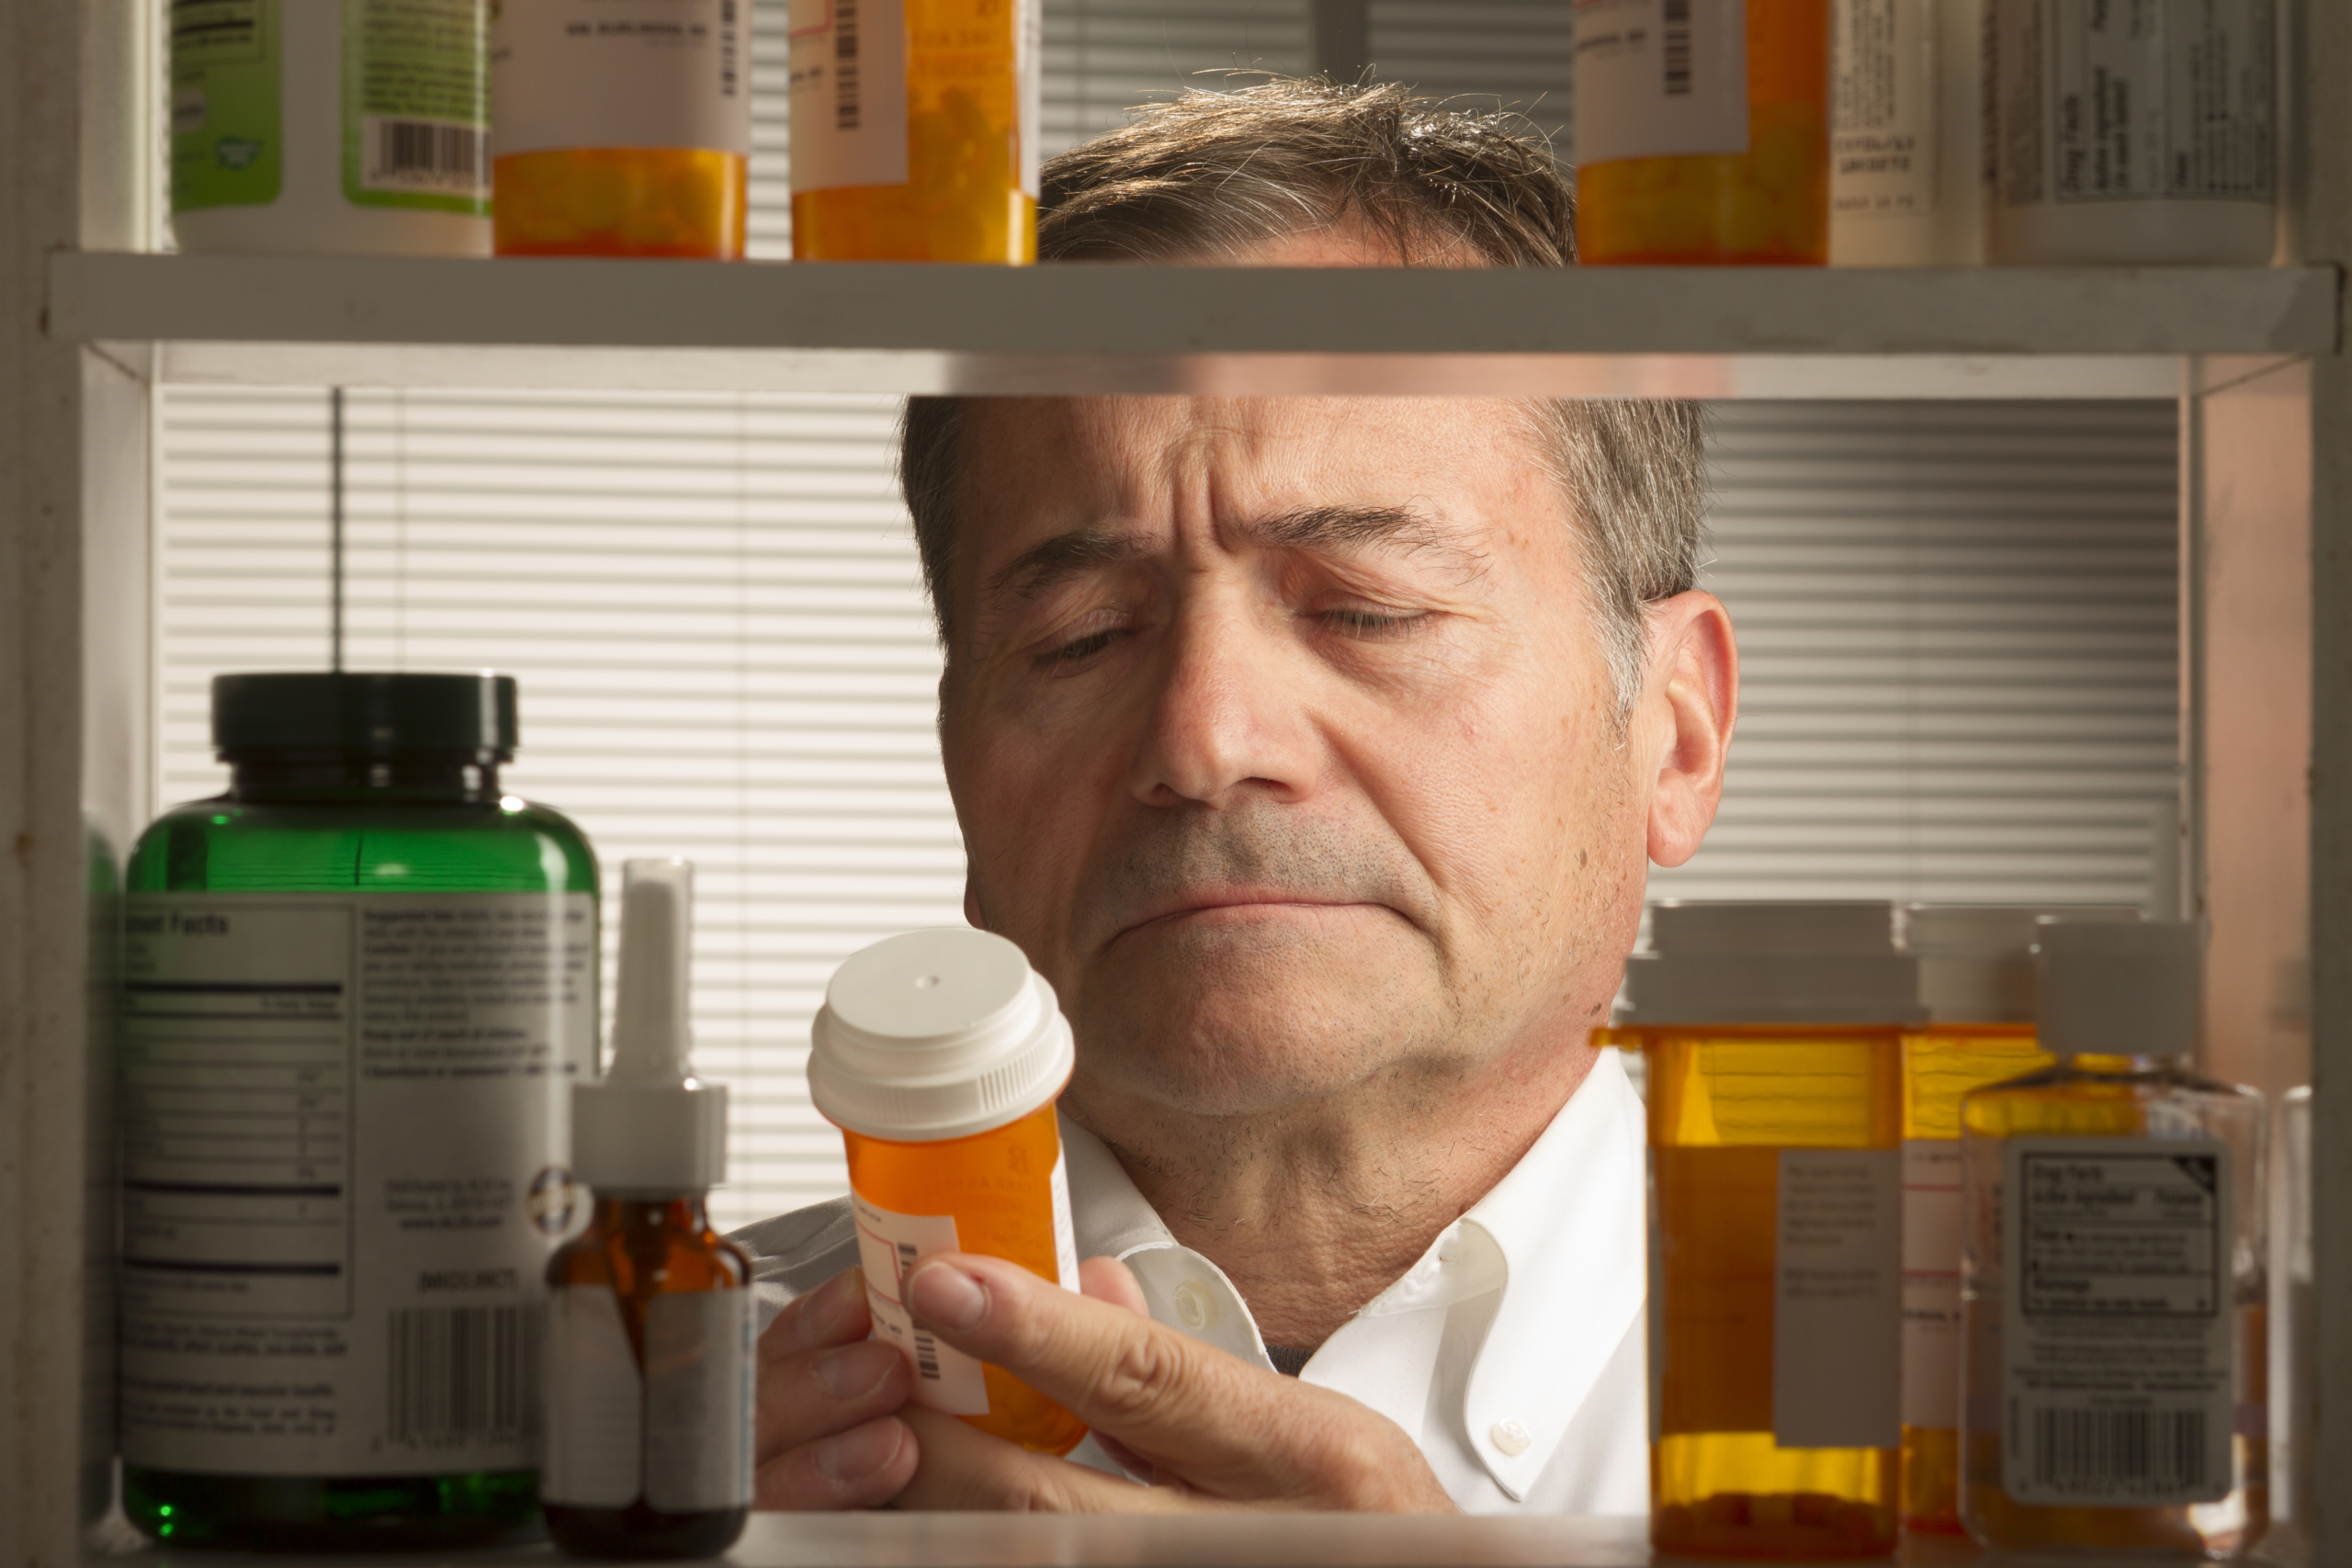 older man looking at medicine bottle label